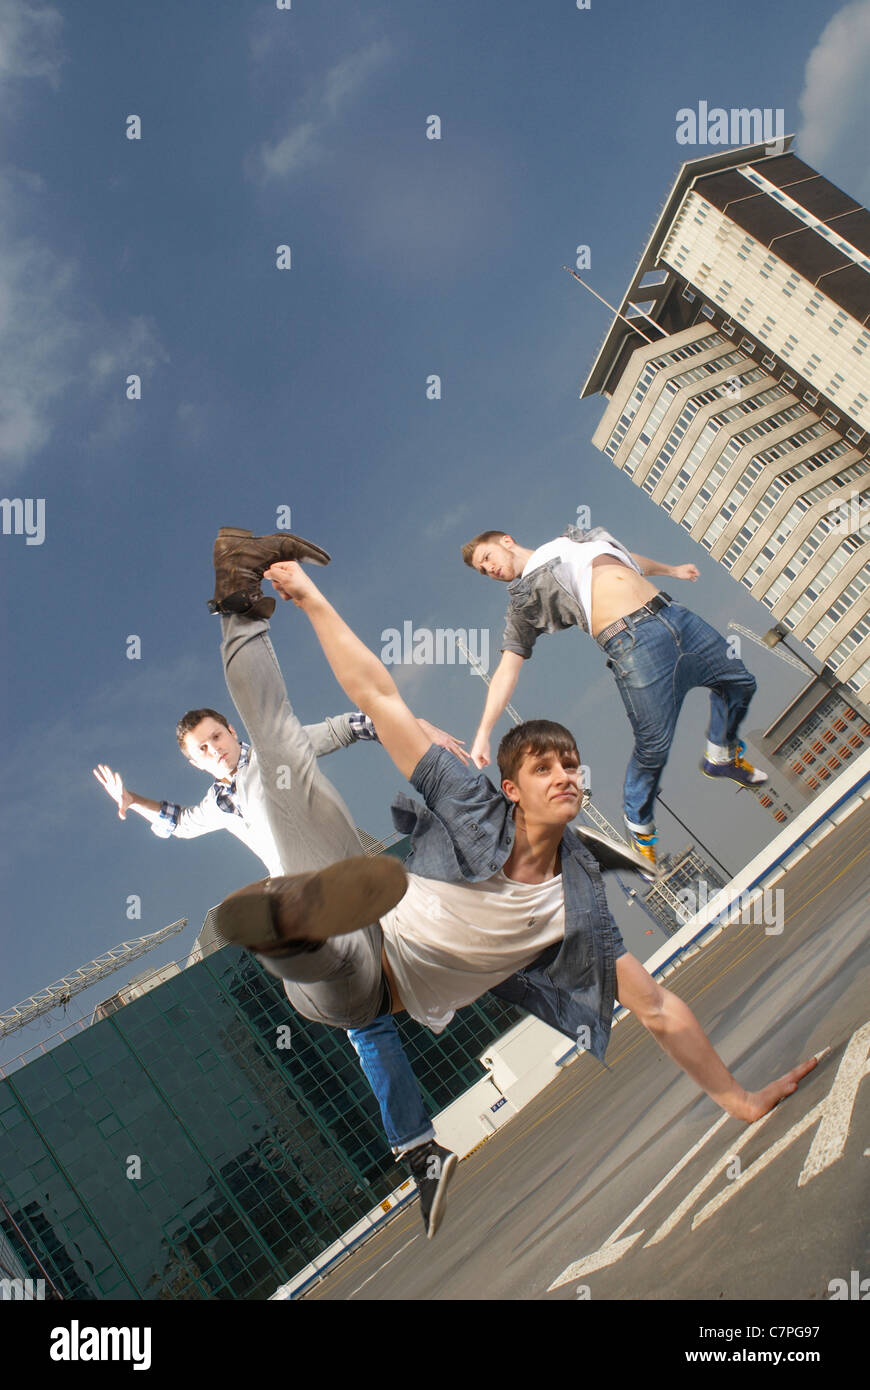 Men dancing on urban rooftop Stock Photo